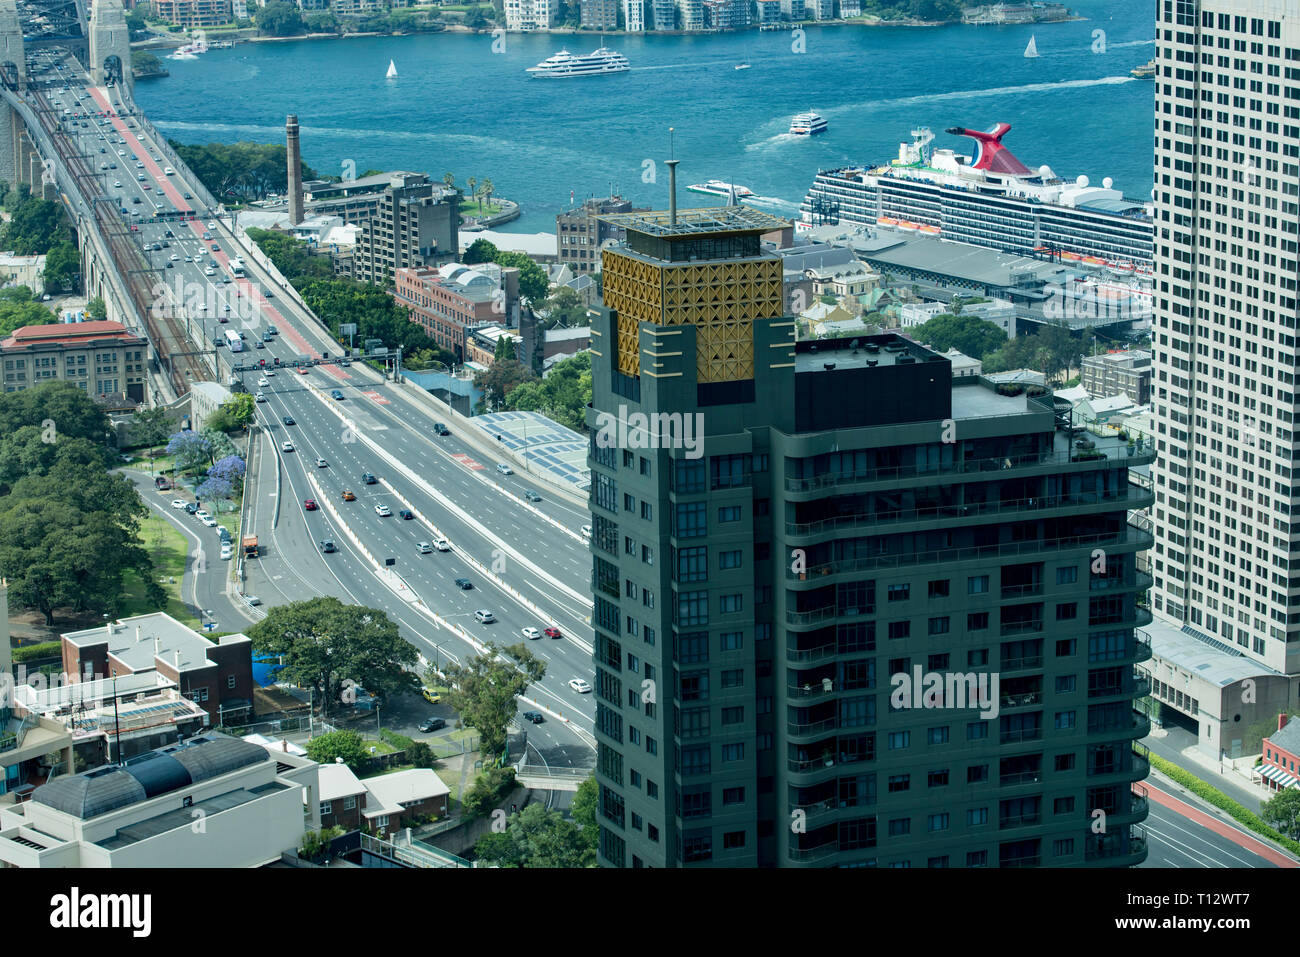 Un lujo en jade y oro coronado bloque de apartamentos en Sydney que ofrece impresionantes vistas del puente y el puerto fue una vez un envejecimiento y monótona de la torre de oficinas. Foto de stock